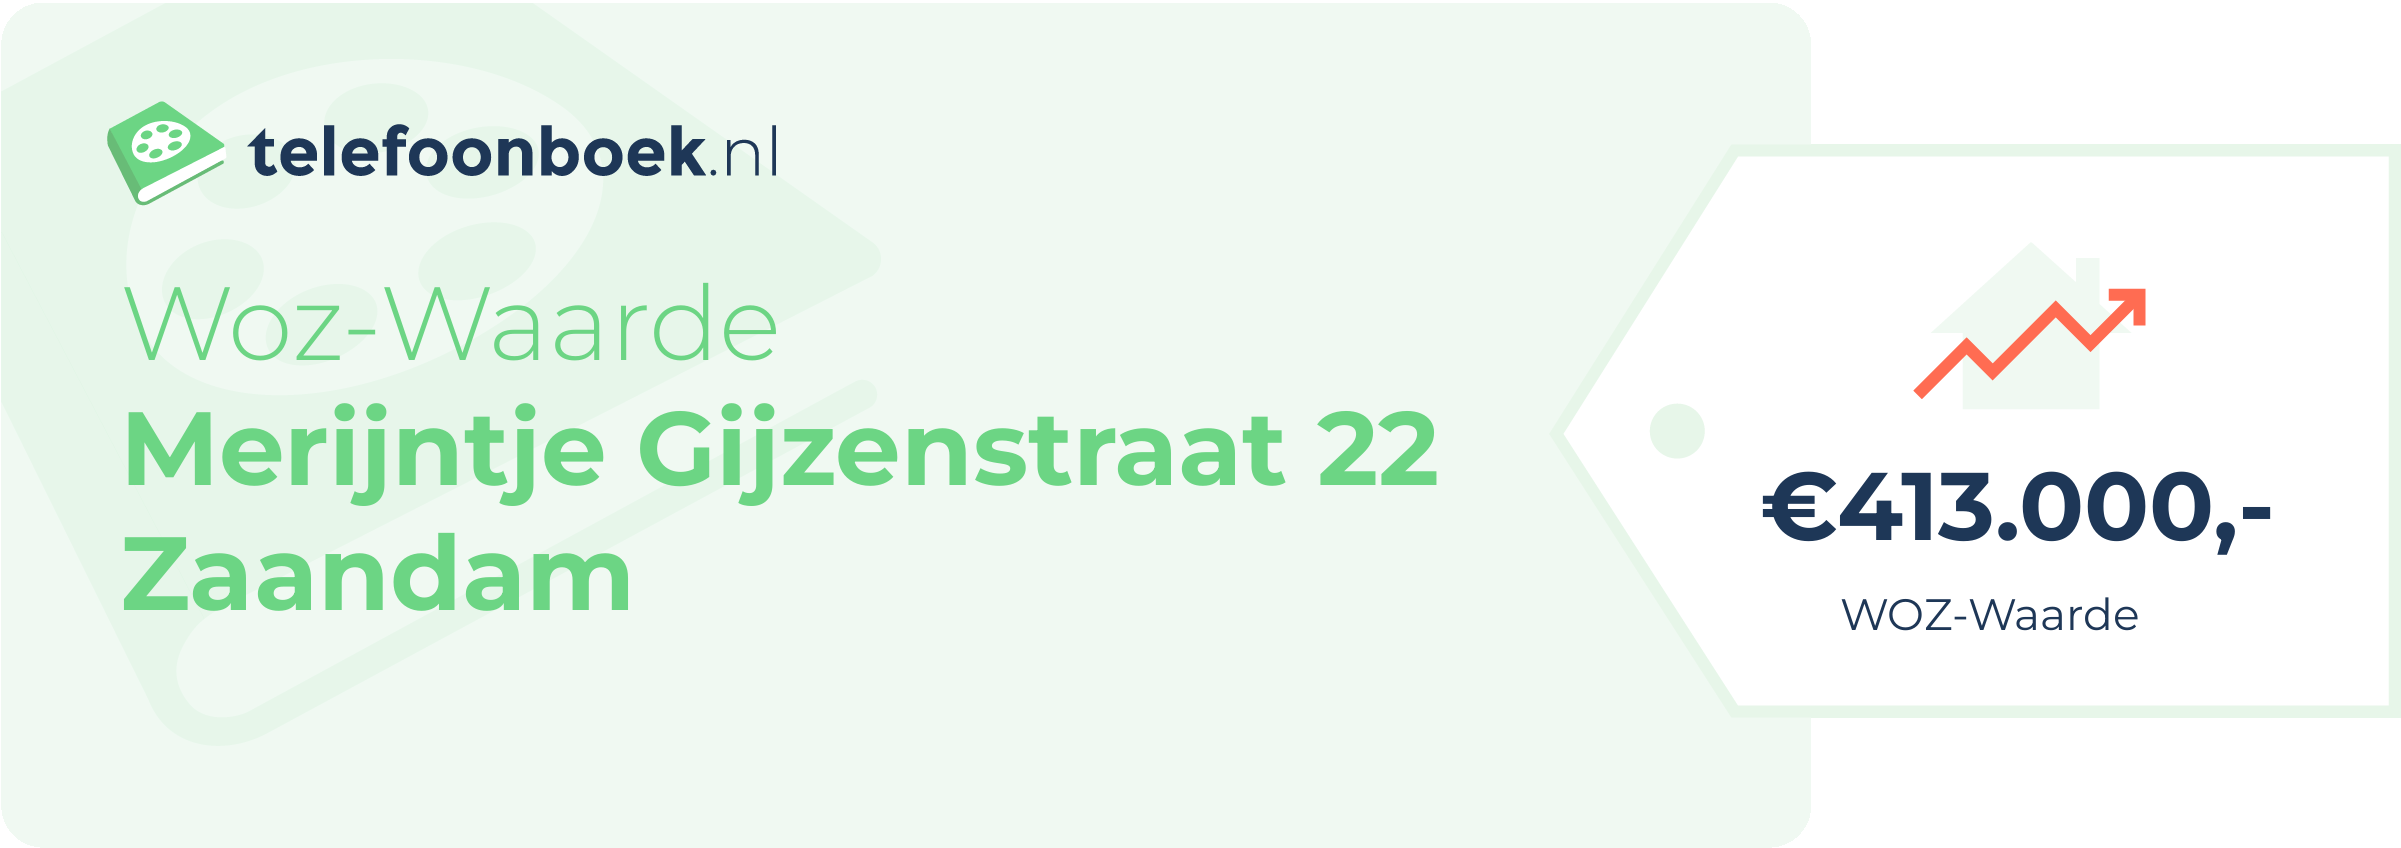 WOZ-waarde Merijntje Gijzenstraat 22 Zaandam